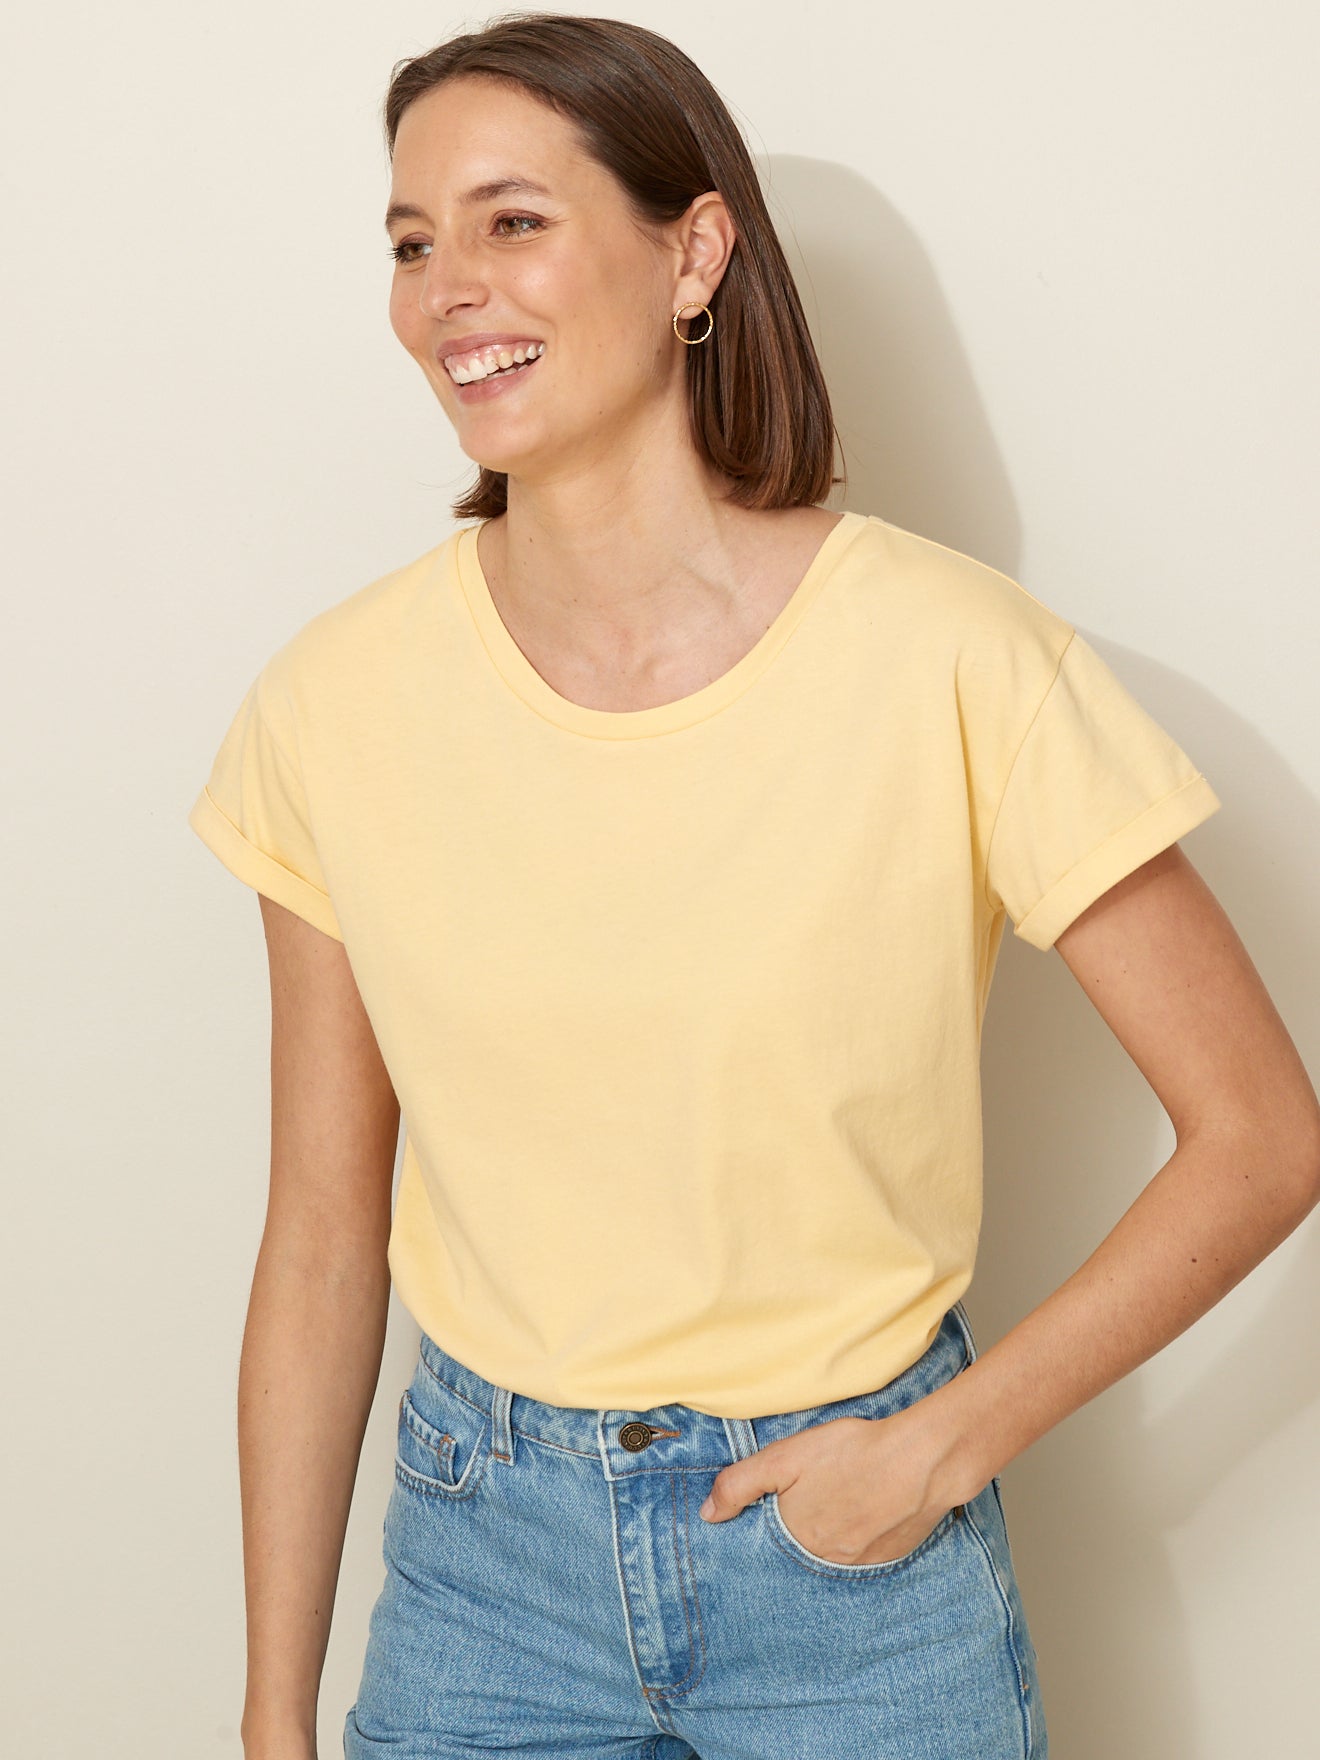 T-shirt manches courtes femme - coton biologique